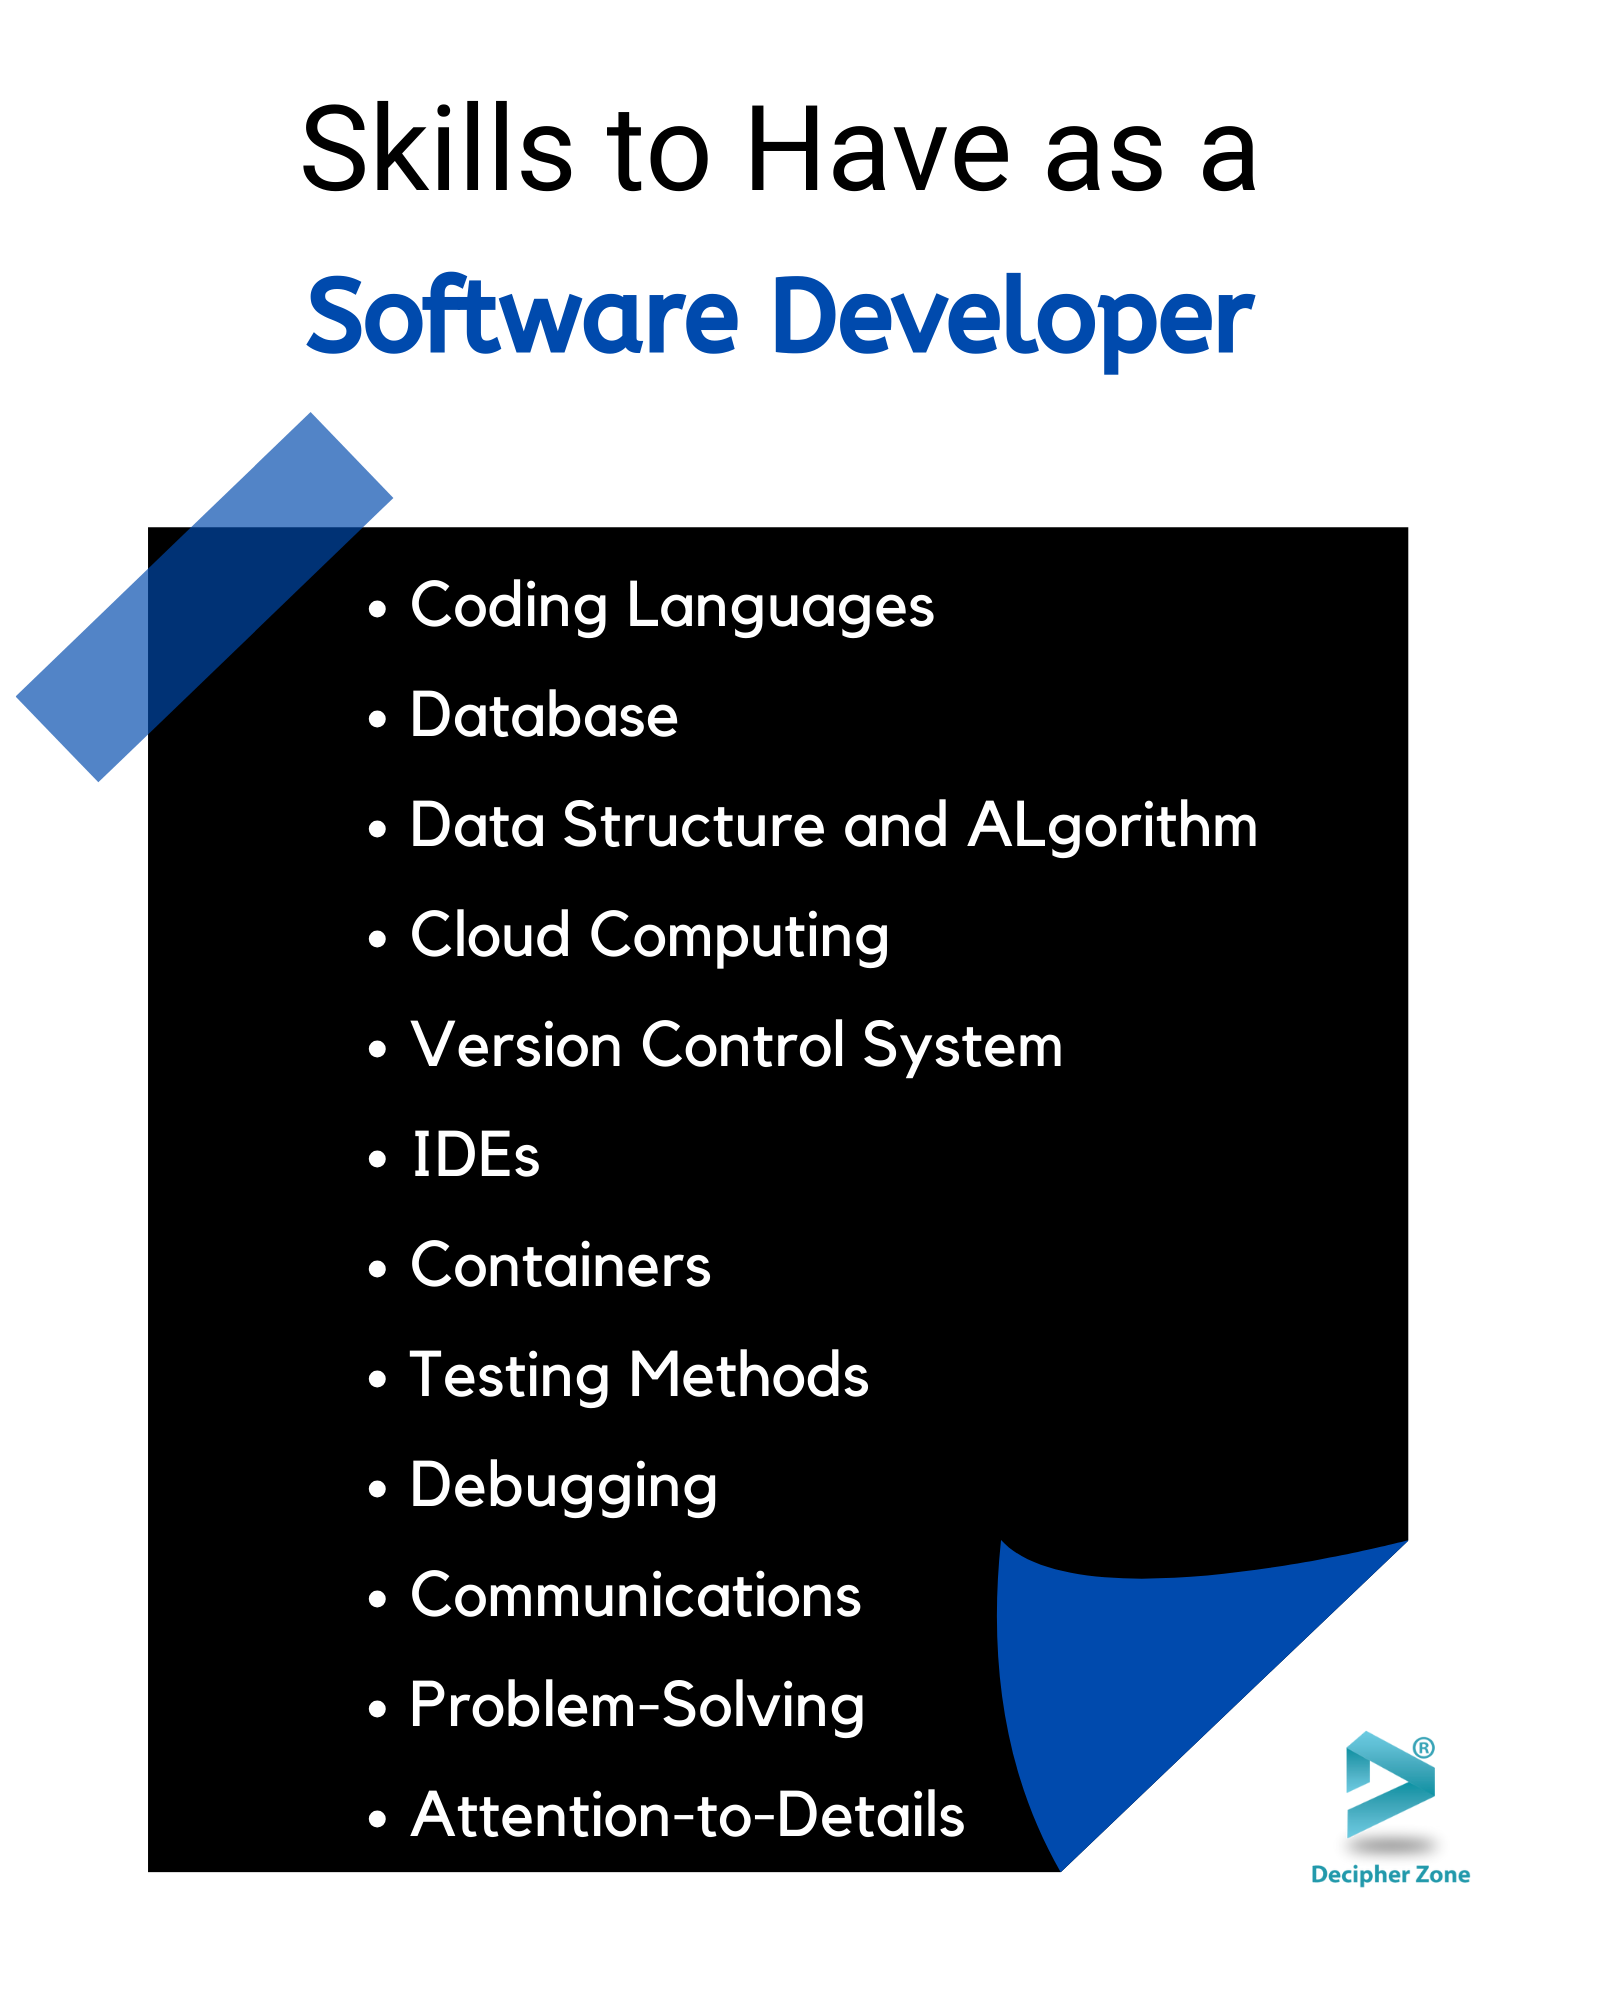 Skills A Software Developer Should Have